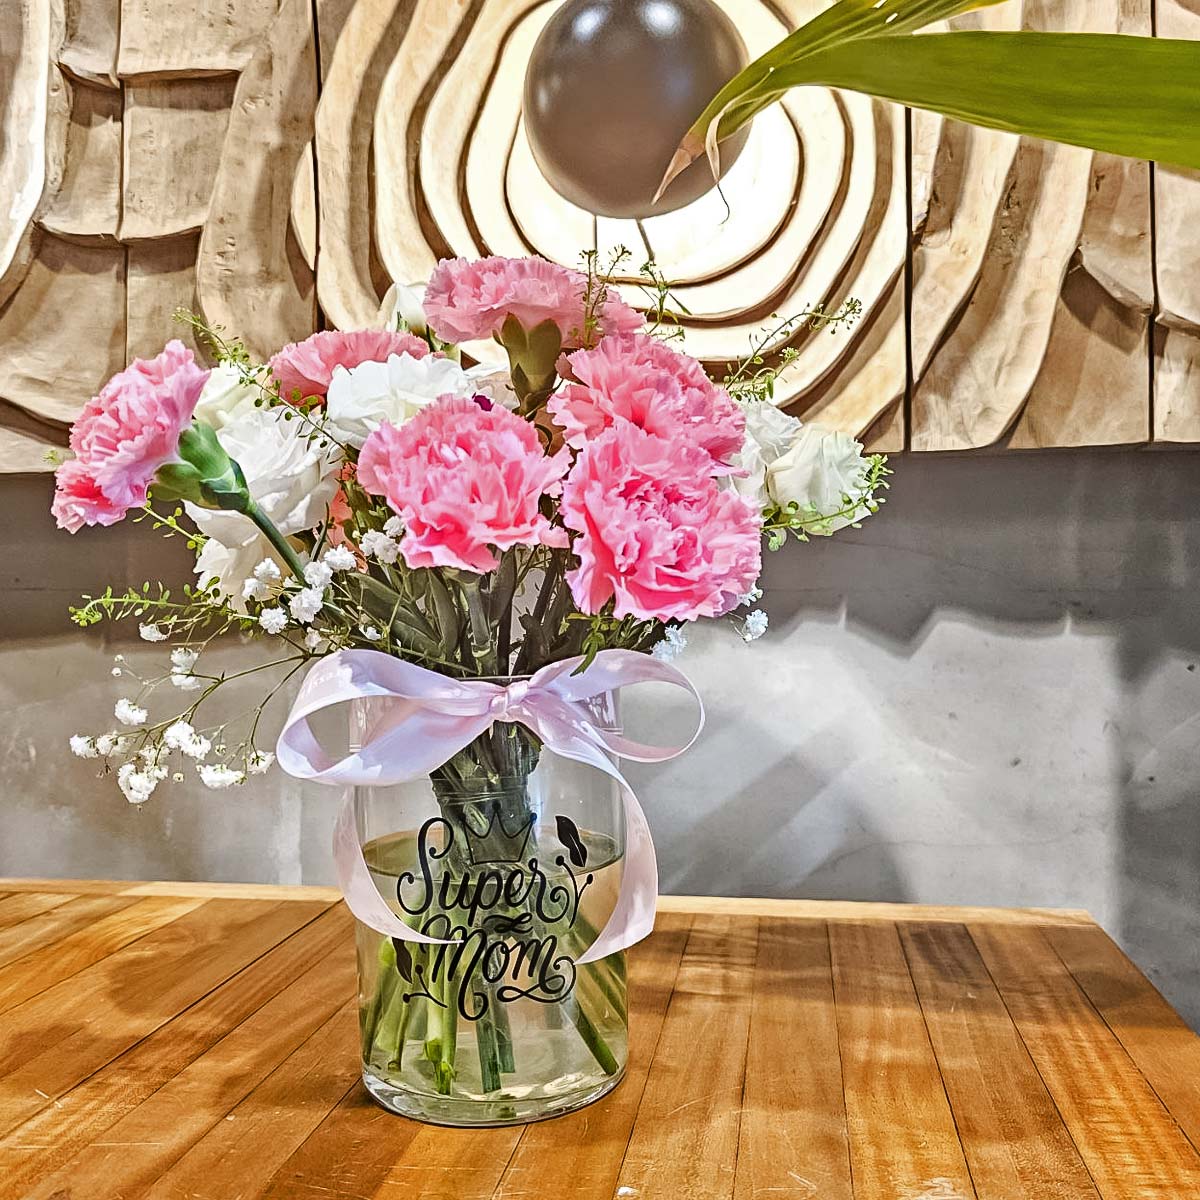 MDAR2453 Pink Delight (10 Shocking Pink Carnations with "Super Mom" vase) 3a